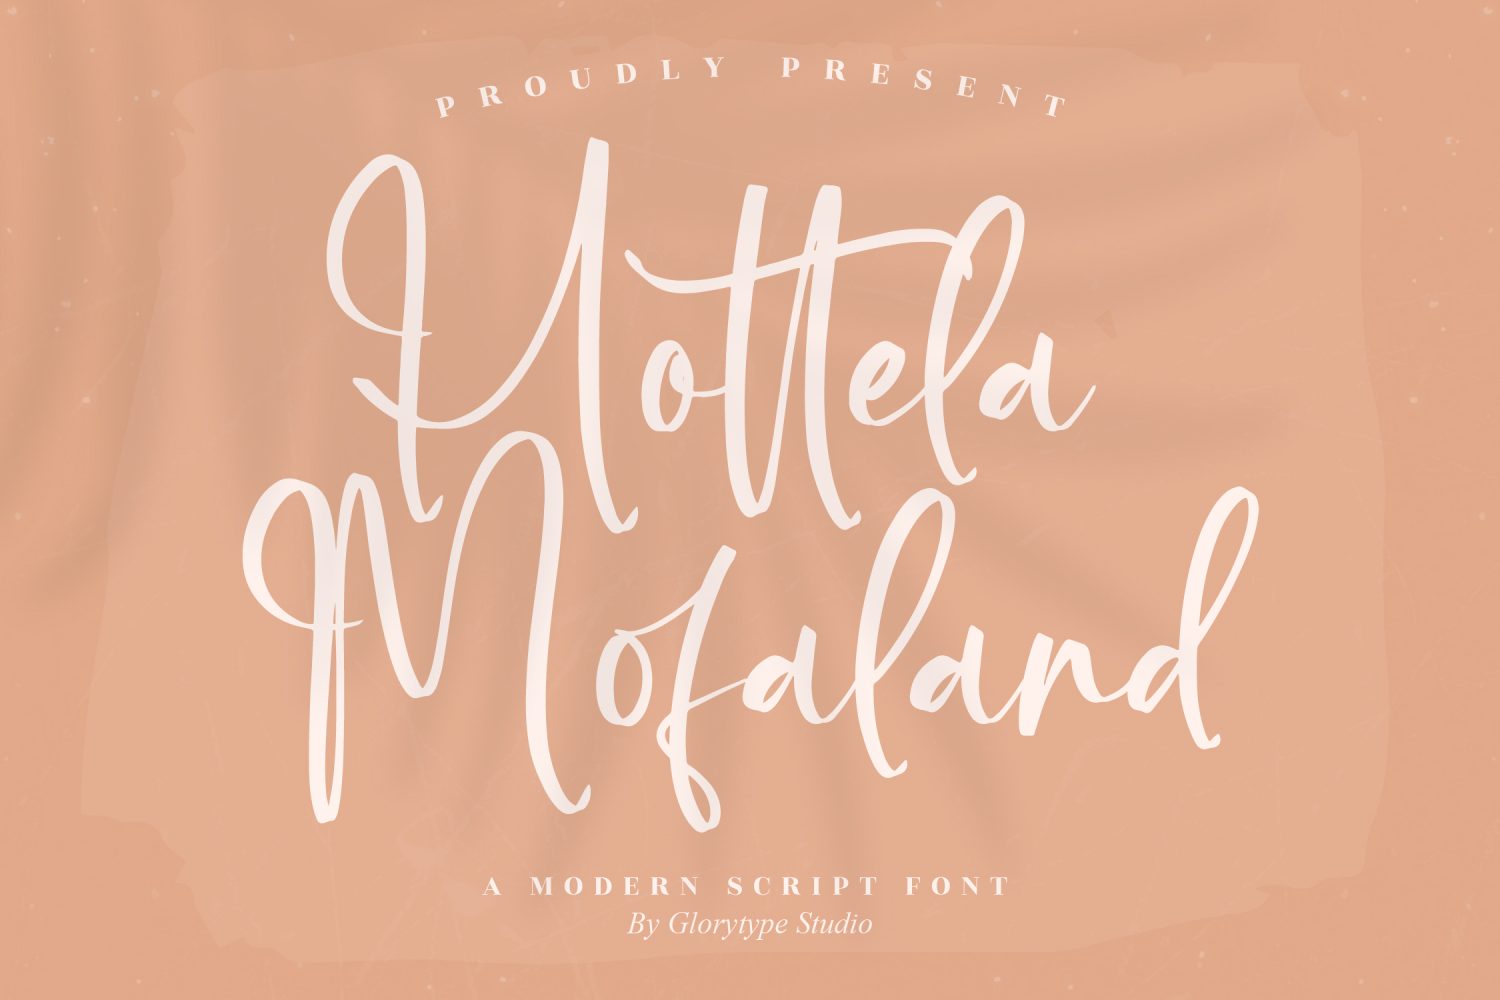 Hottela Mofaland Free Font